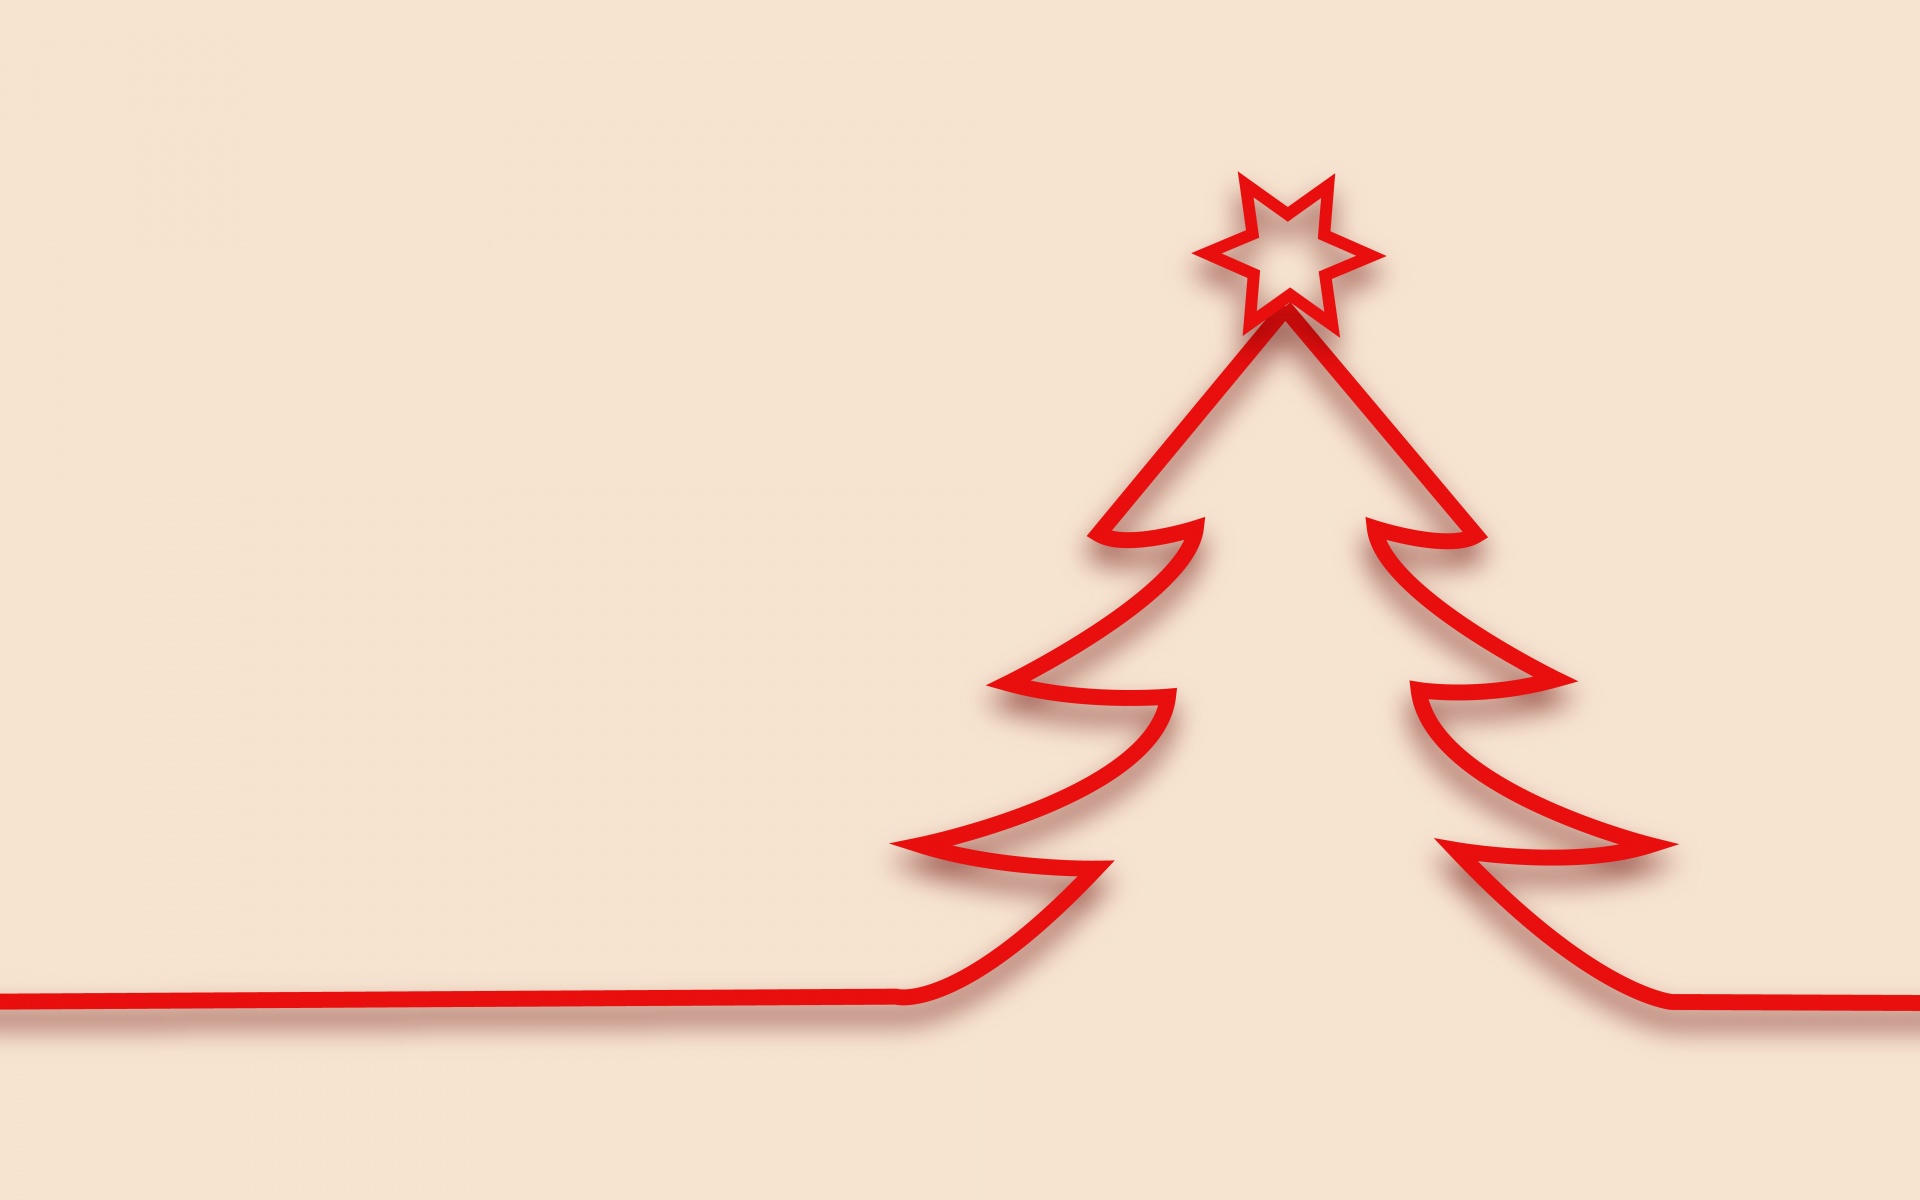 Christmas, Christmas Tree